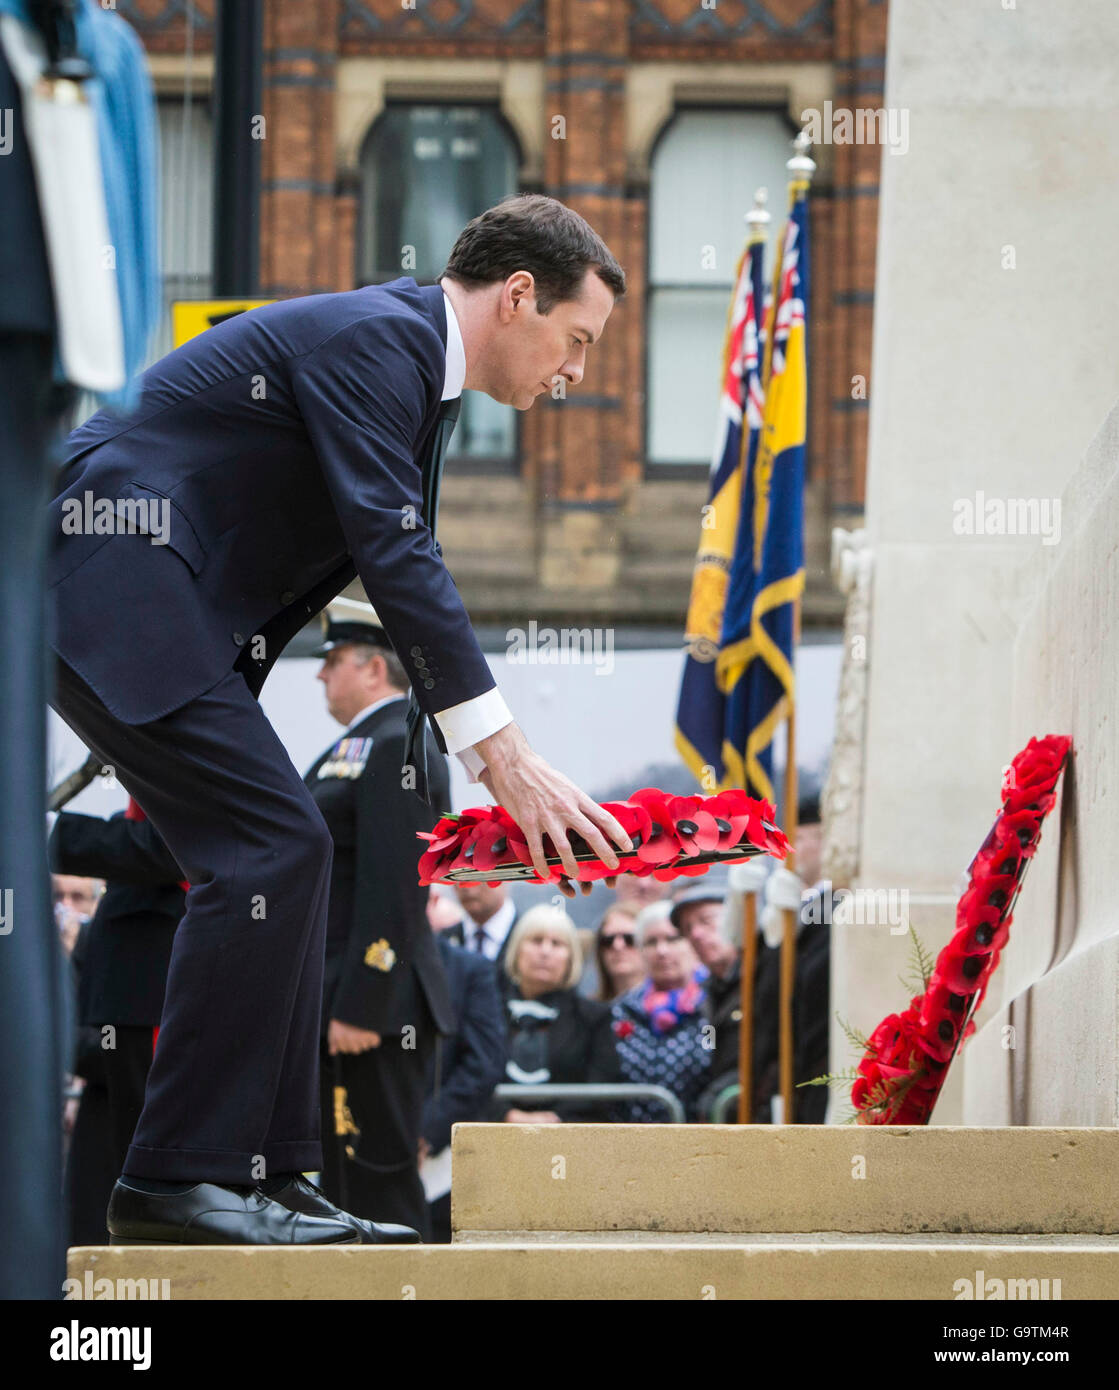 Le Chancelier George Osborne présente une richesse au cénotaphe de St Peter's Square, Manchester, où une cérémonie est organisée pour marquer le 100e anniversaire du début de la bataille de la Somme. Banque D'Images